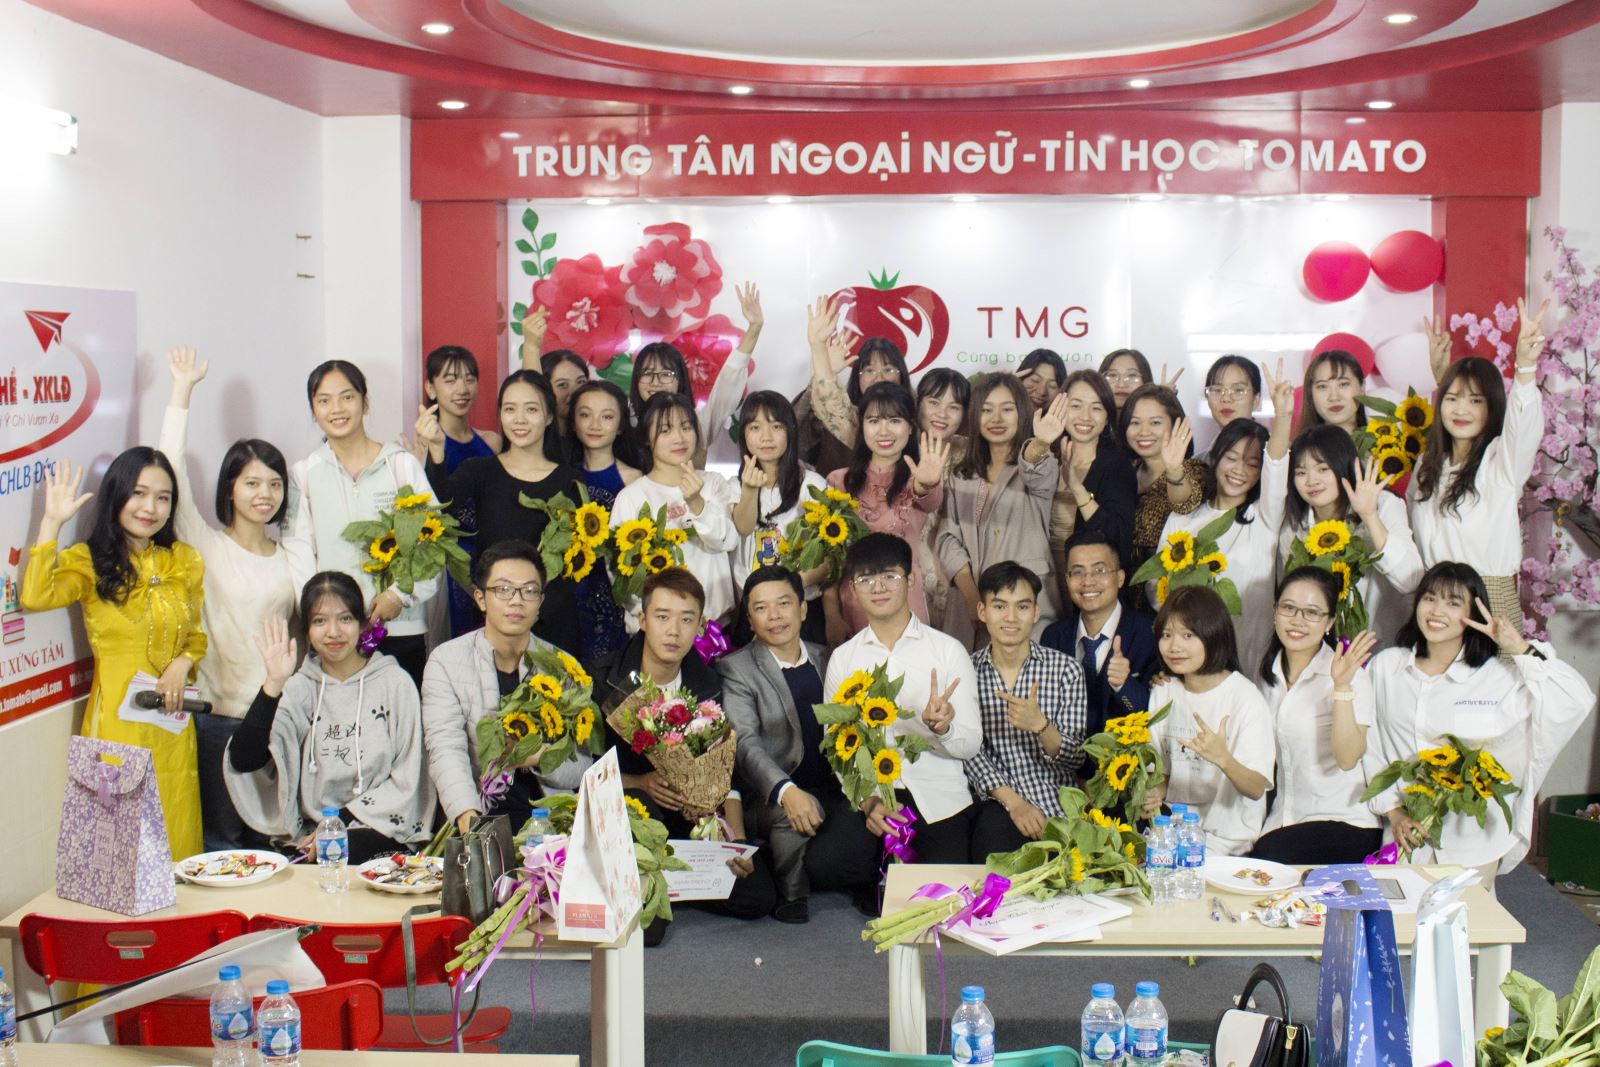 Mừng ngày nhà giáo Việt Nam 20-11 tại trung tâm ngoại ngữ Hải Phòng TOMATO